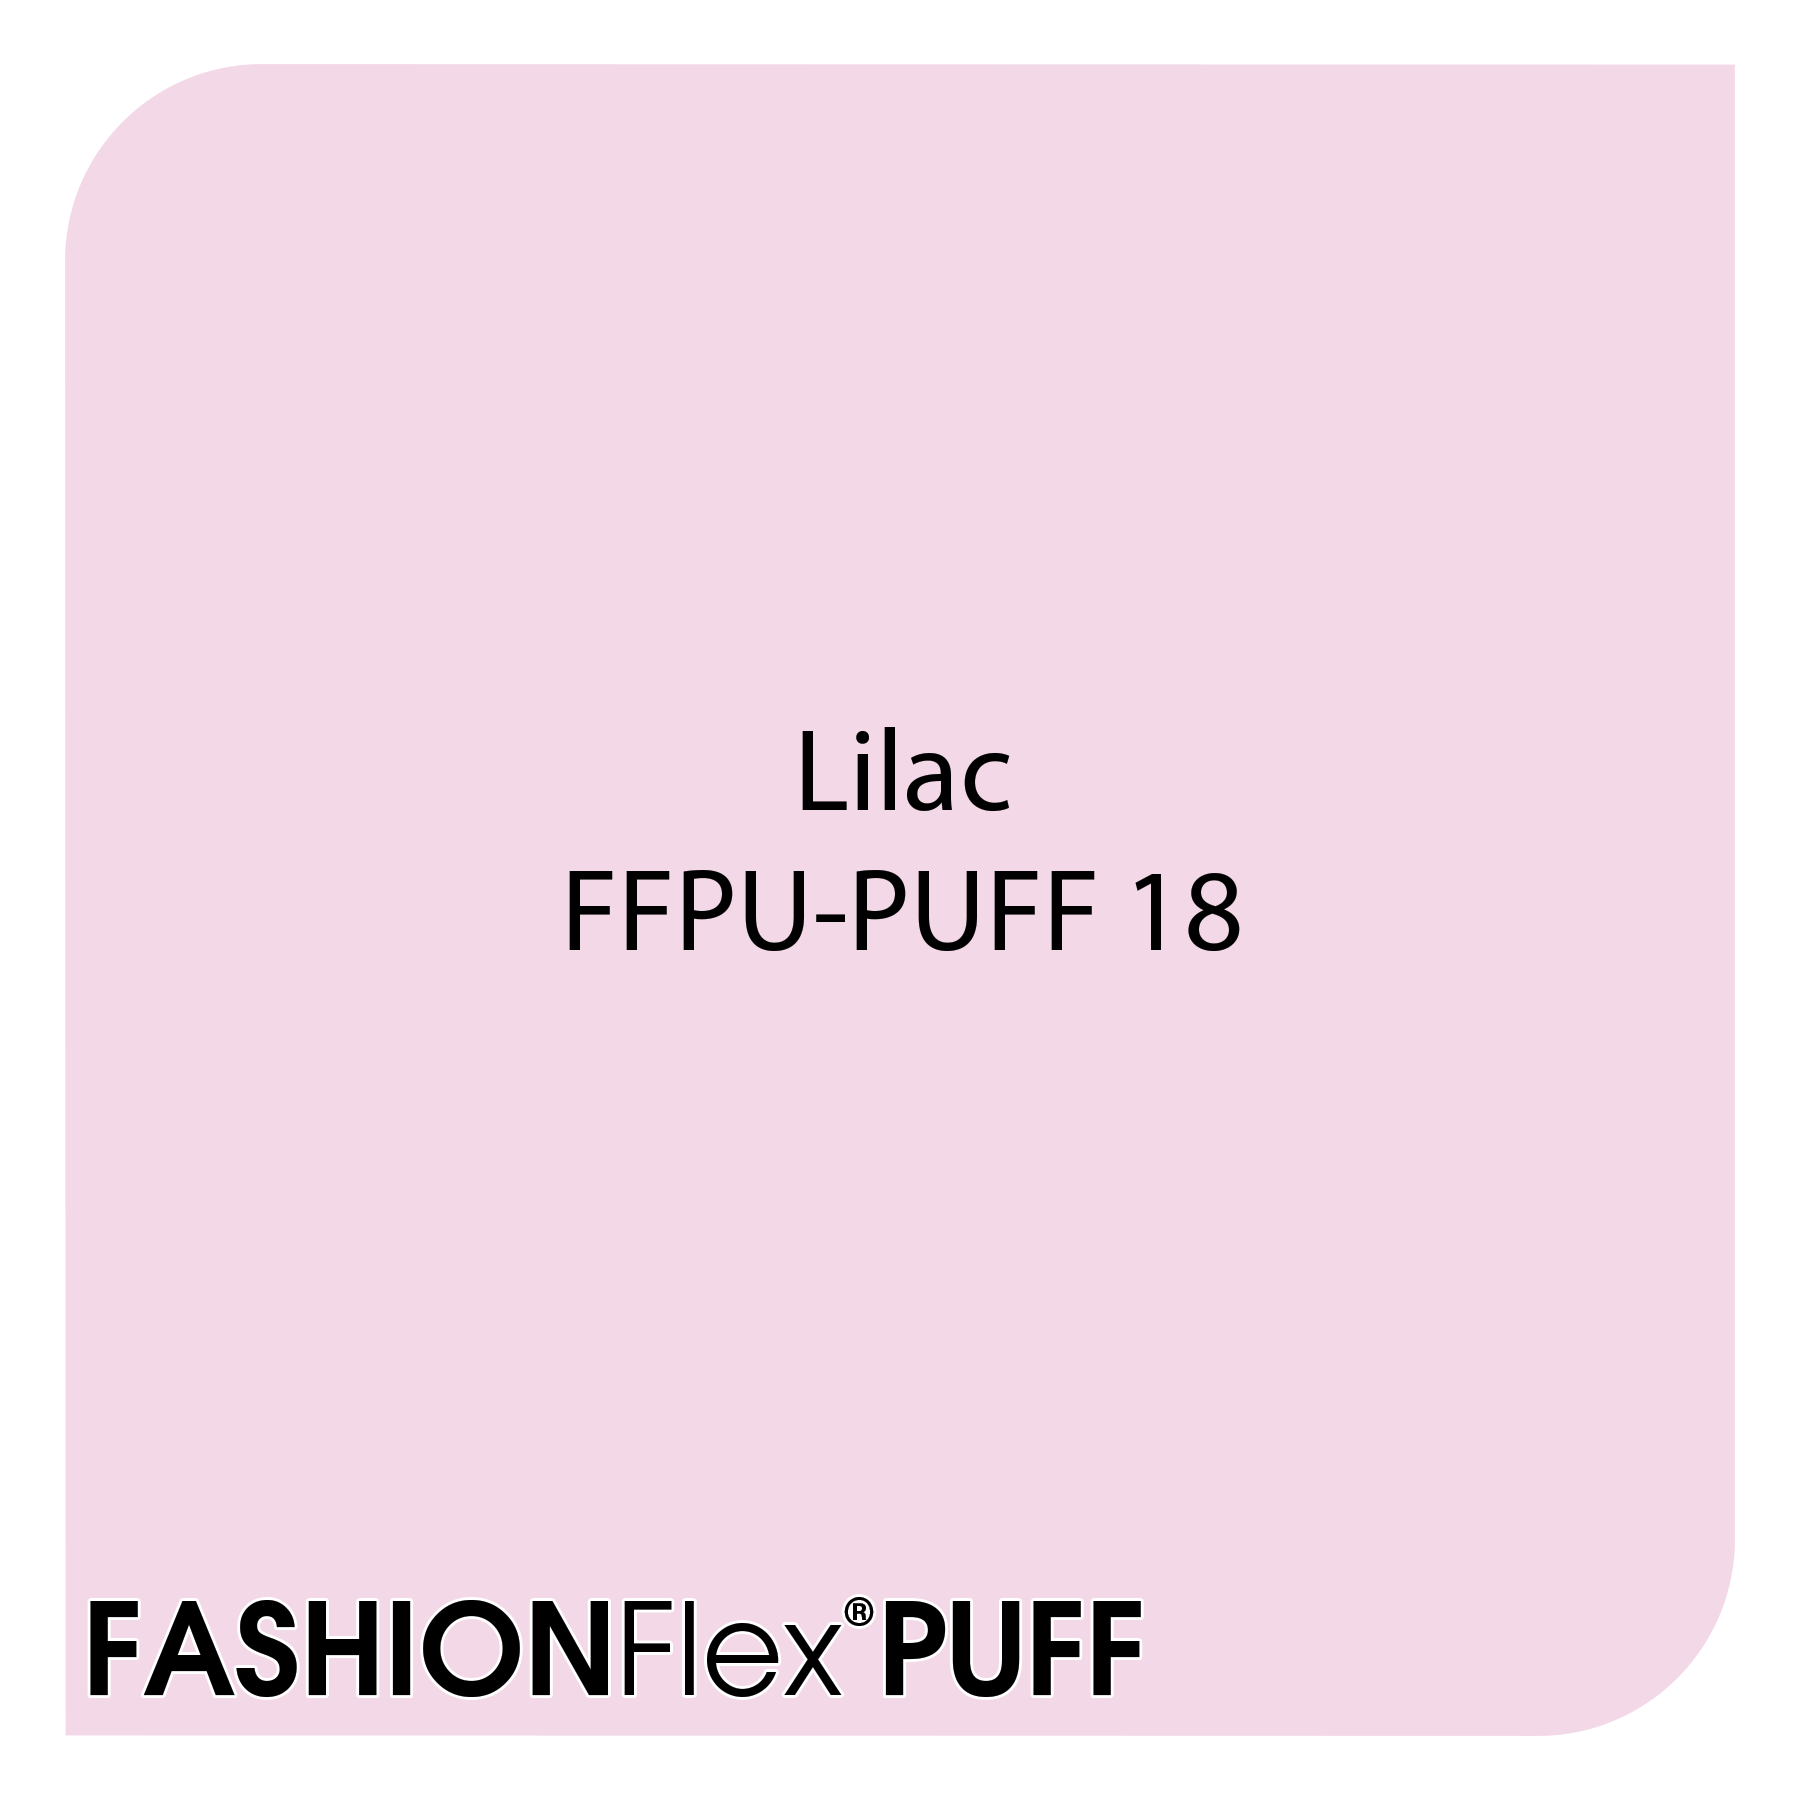 FashionFlex® Puff